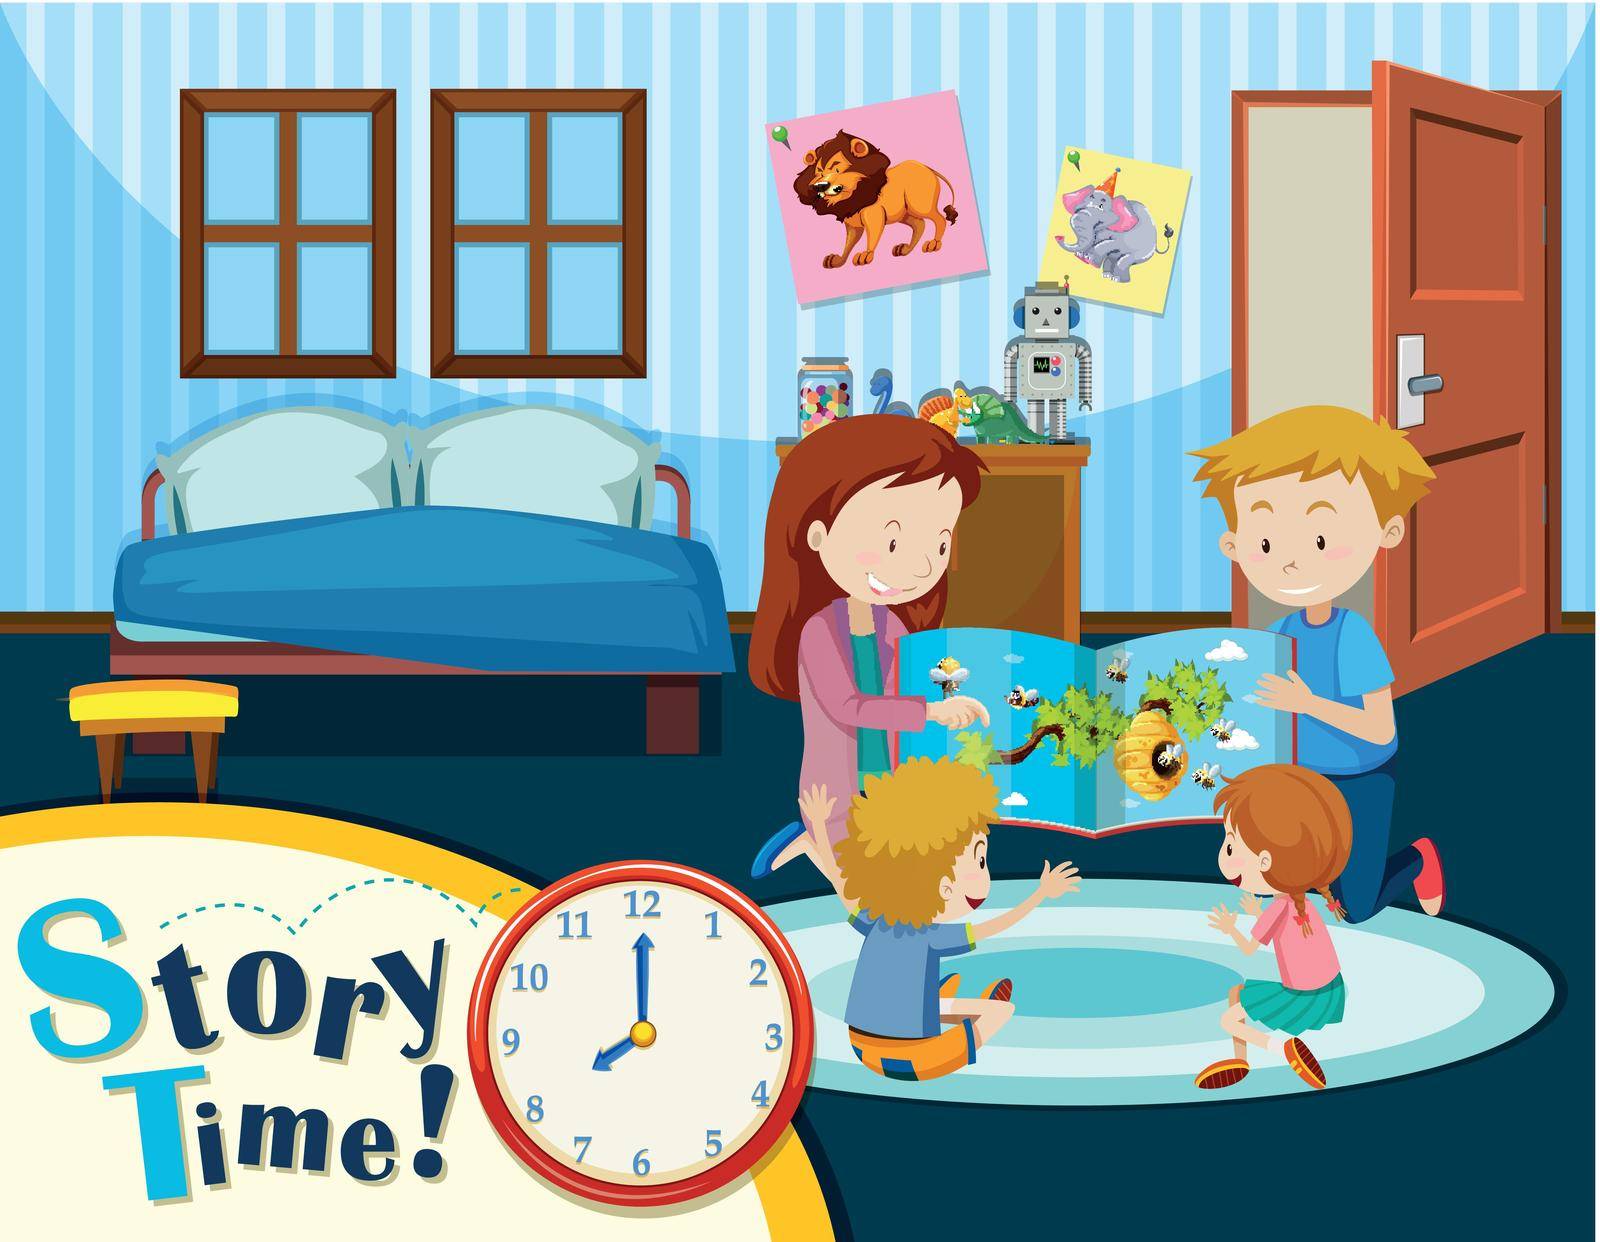 Family story time scene illustration